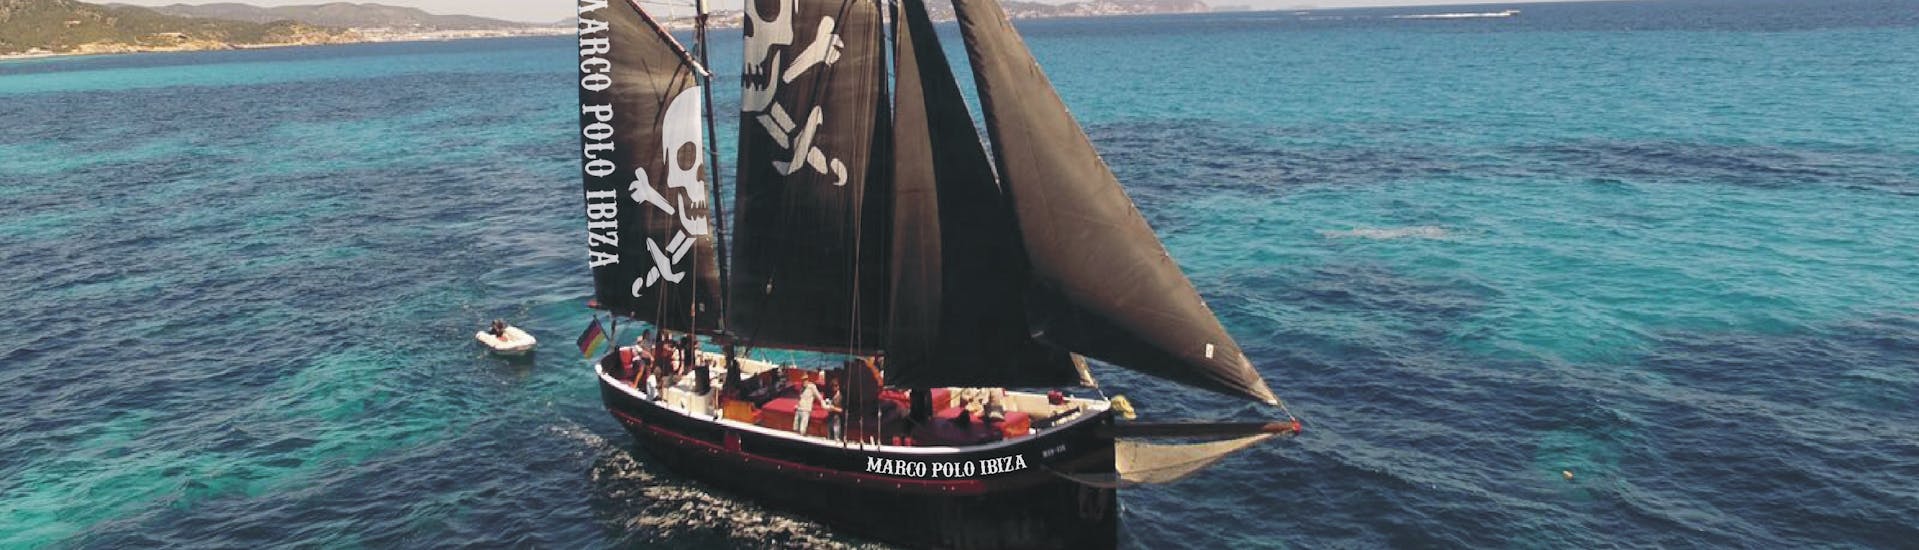 La nostra barca pirata in mare durante la Gita in barca a vela pirata da Ibiza a Formentera con aperitivo e snorkeling con Marco Polo Ibiza.